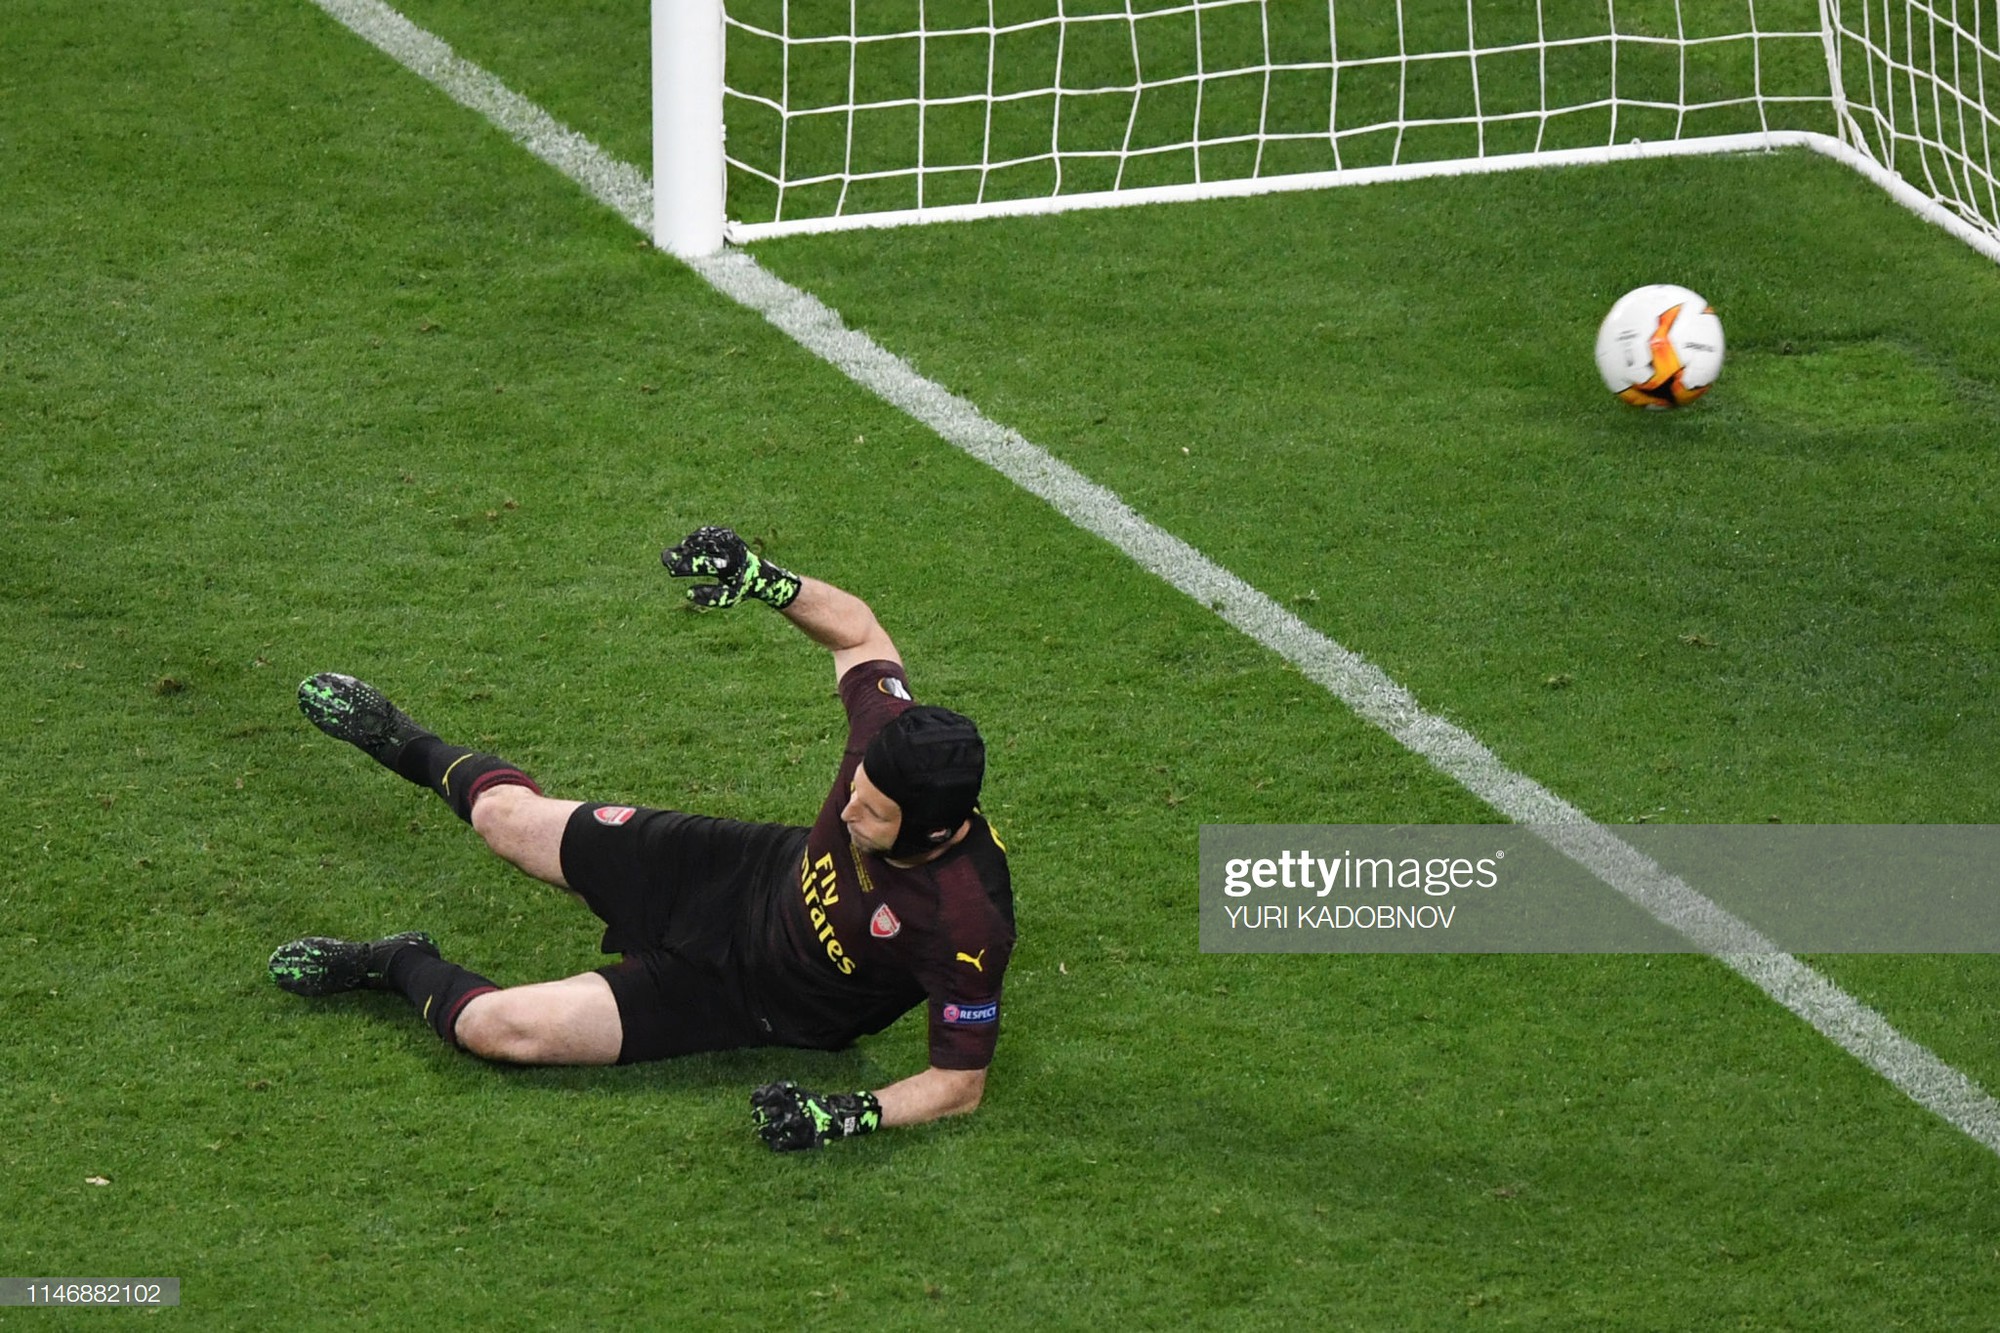 Hành động đáng trân trọng của thủ môn Bùi Tiến Dũng sau khi chứng kiến thần tượng Petr Cech rơi lệ vì thua trận chung kết Europa League - Ảnh 1.